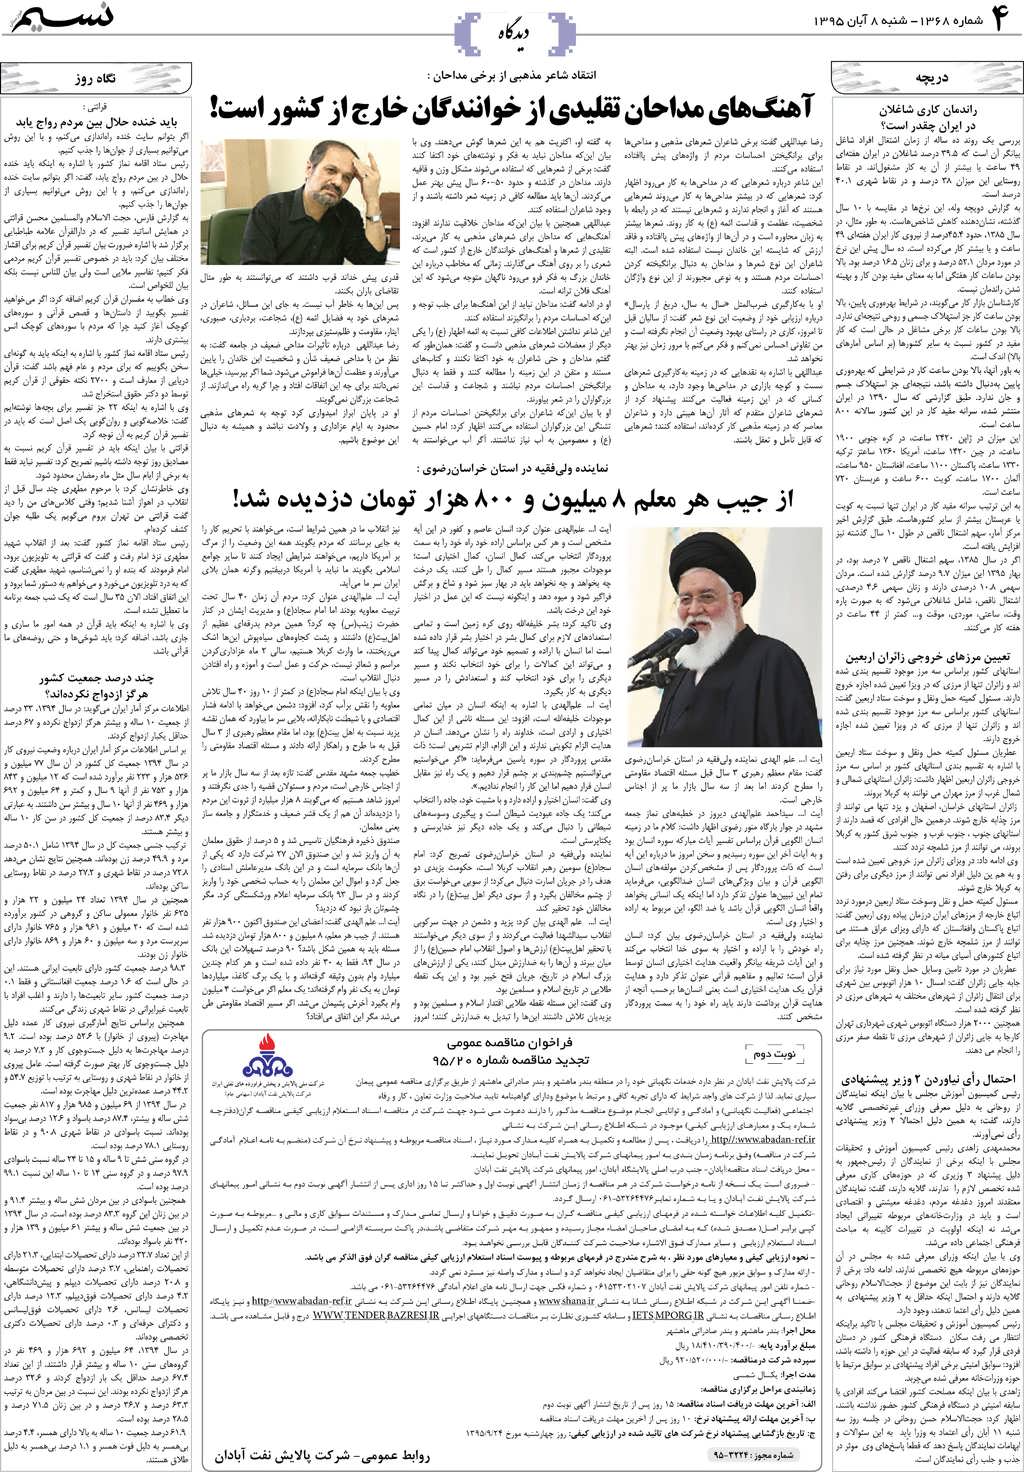 صفحه دیدگاه روزنامه نسیم شماره 1368